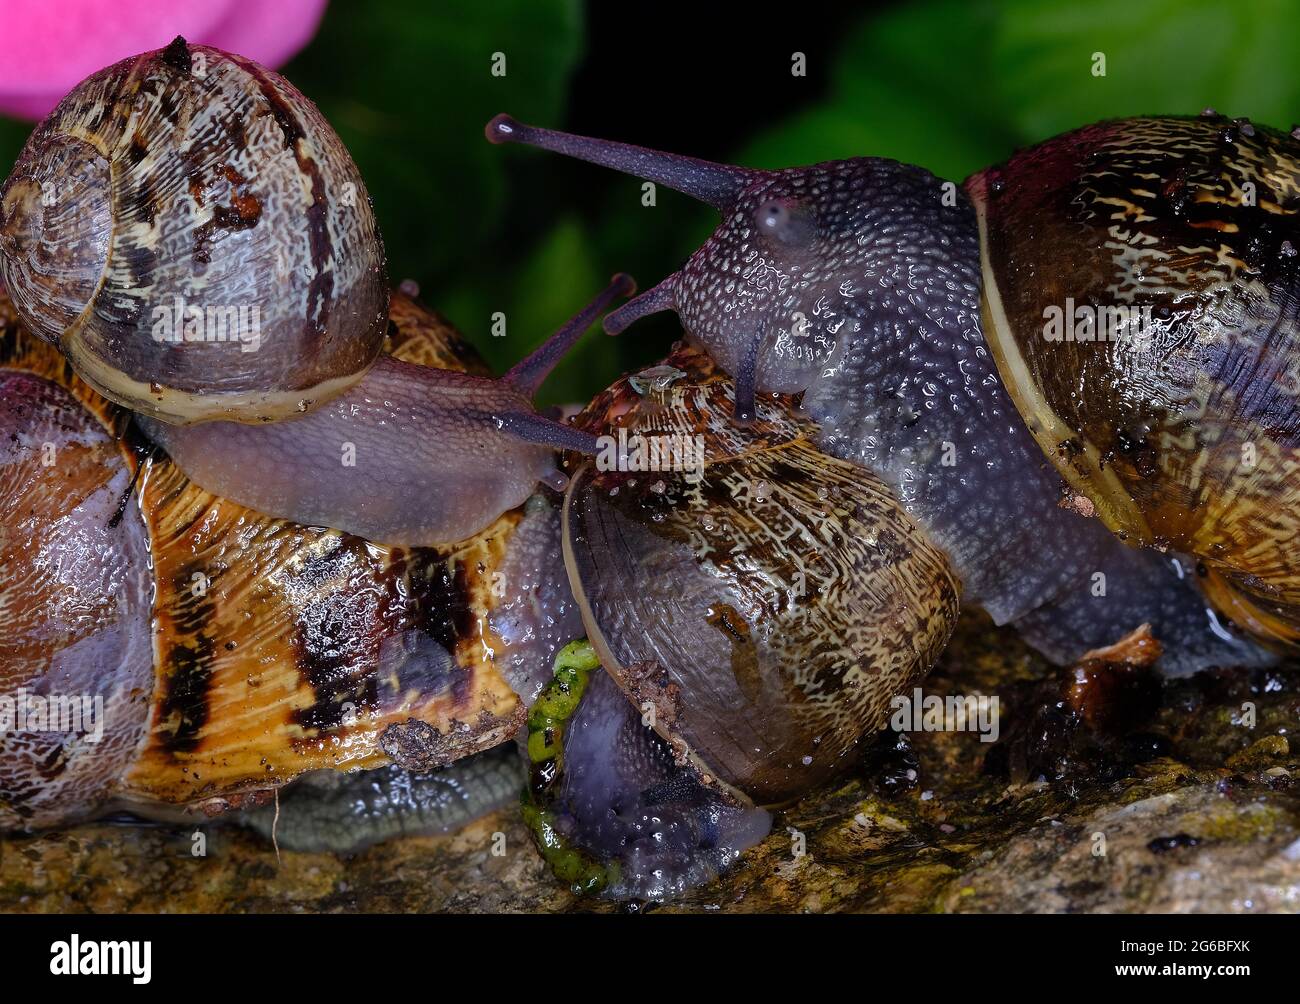 Cornu aspersum, noto con il nome comune di lumaca da giardino, è una specie di lumaca della famiglia degli Helicidae. Foto Stock